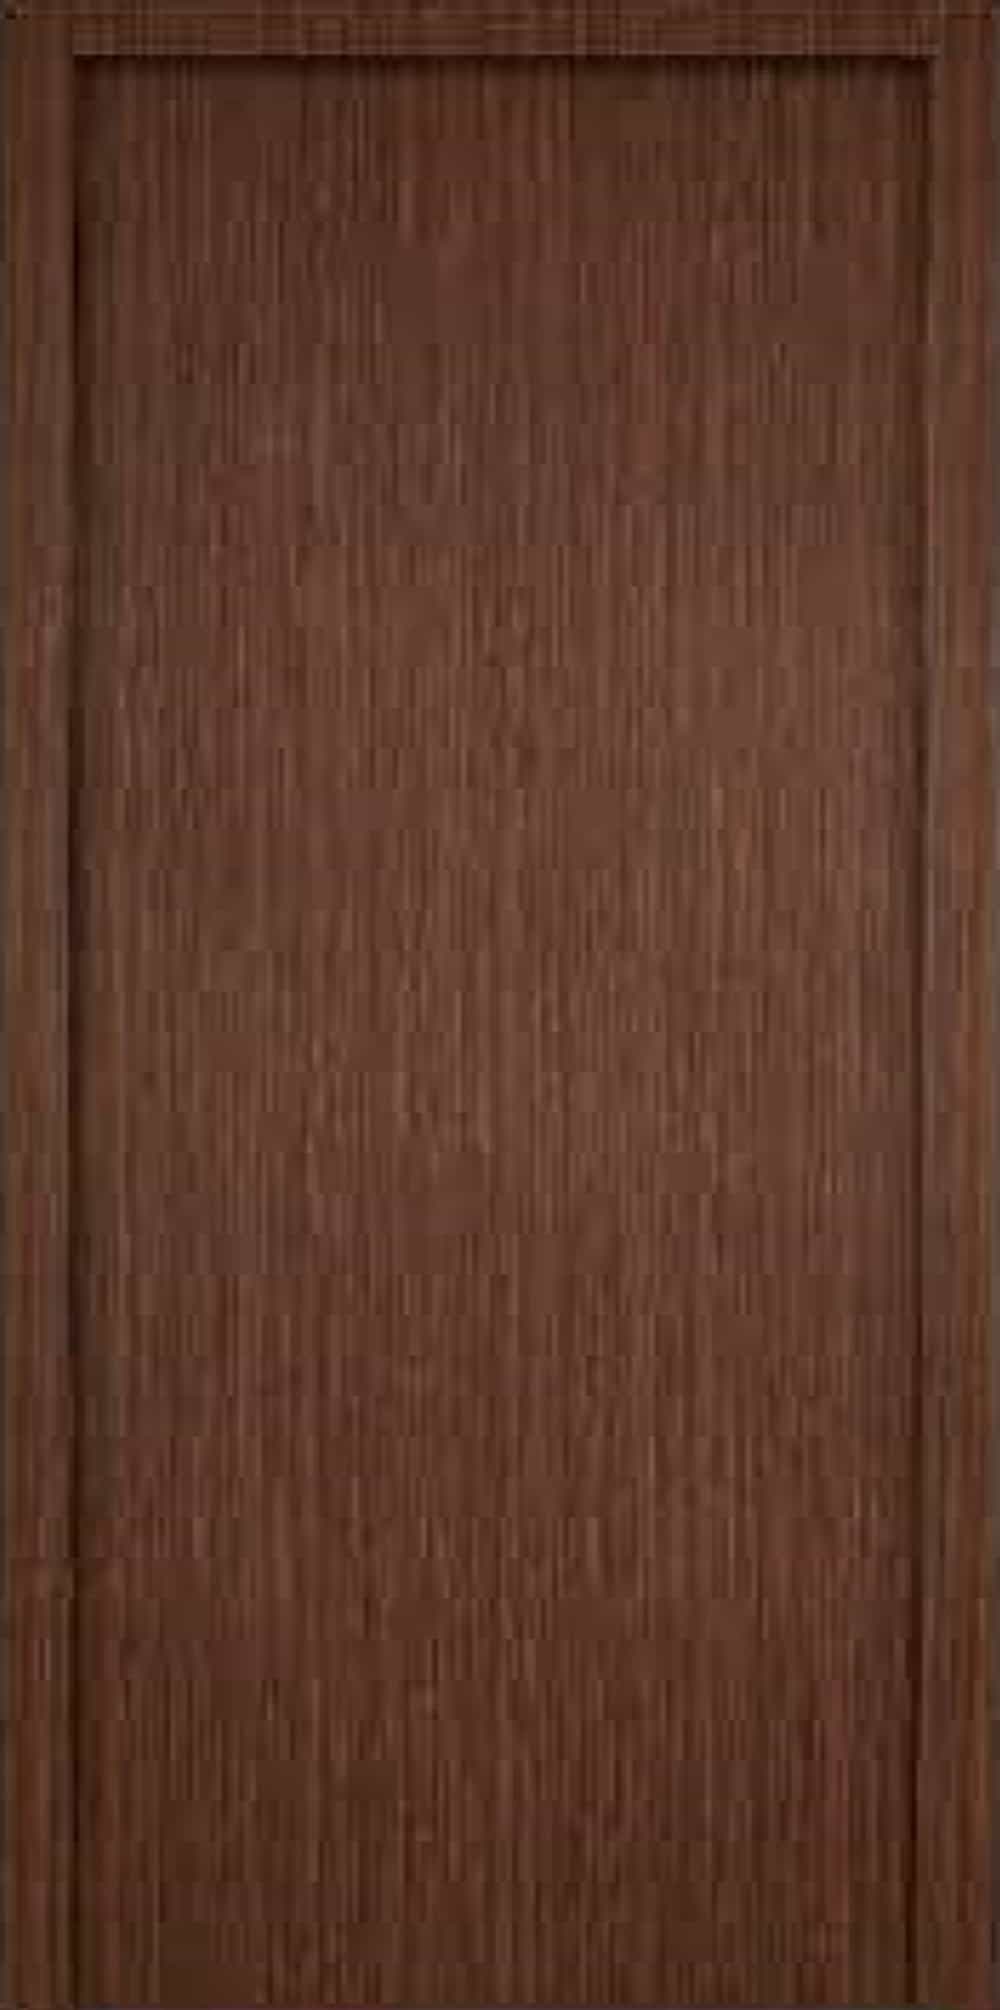 DOOR SV 4731 - Stanford Vinyl Laminated Deco Door